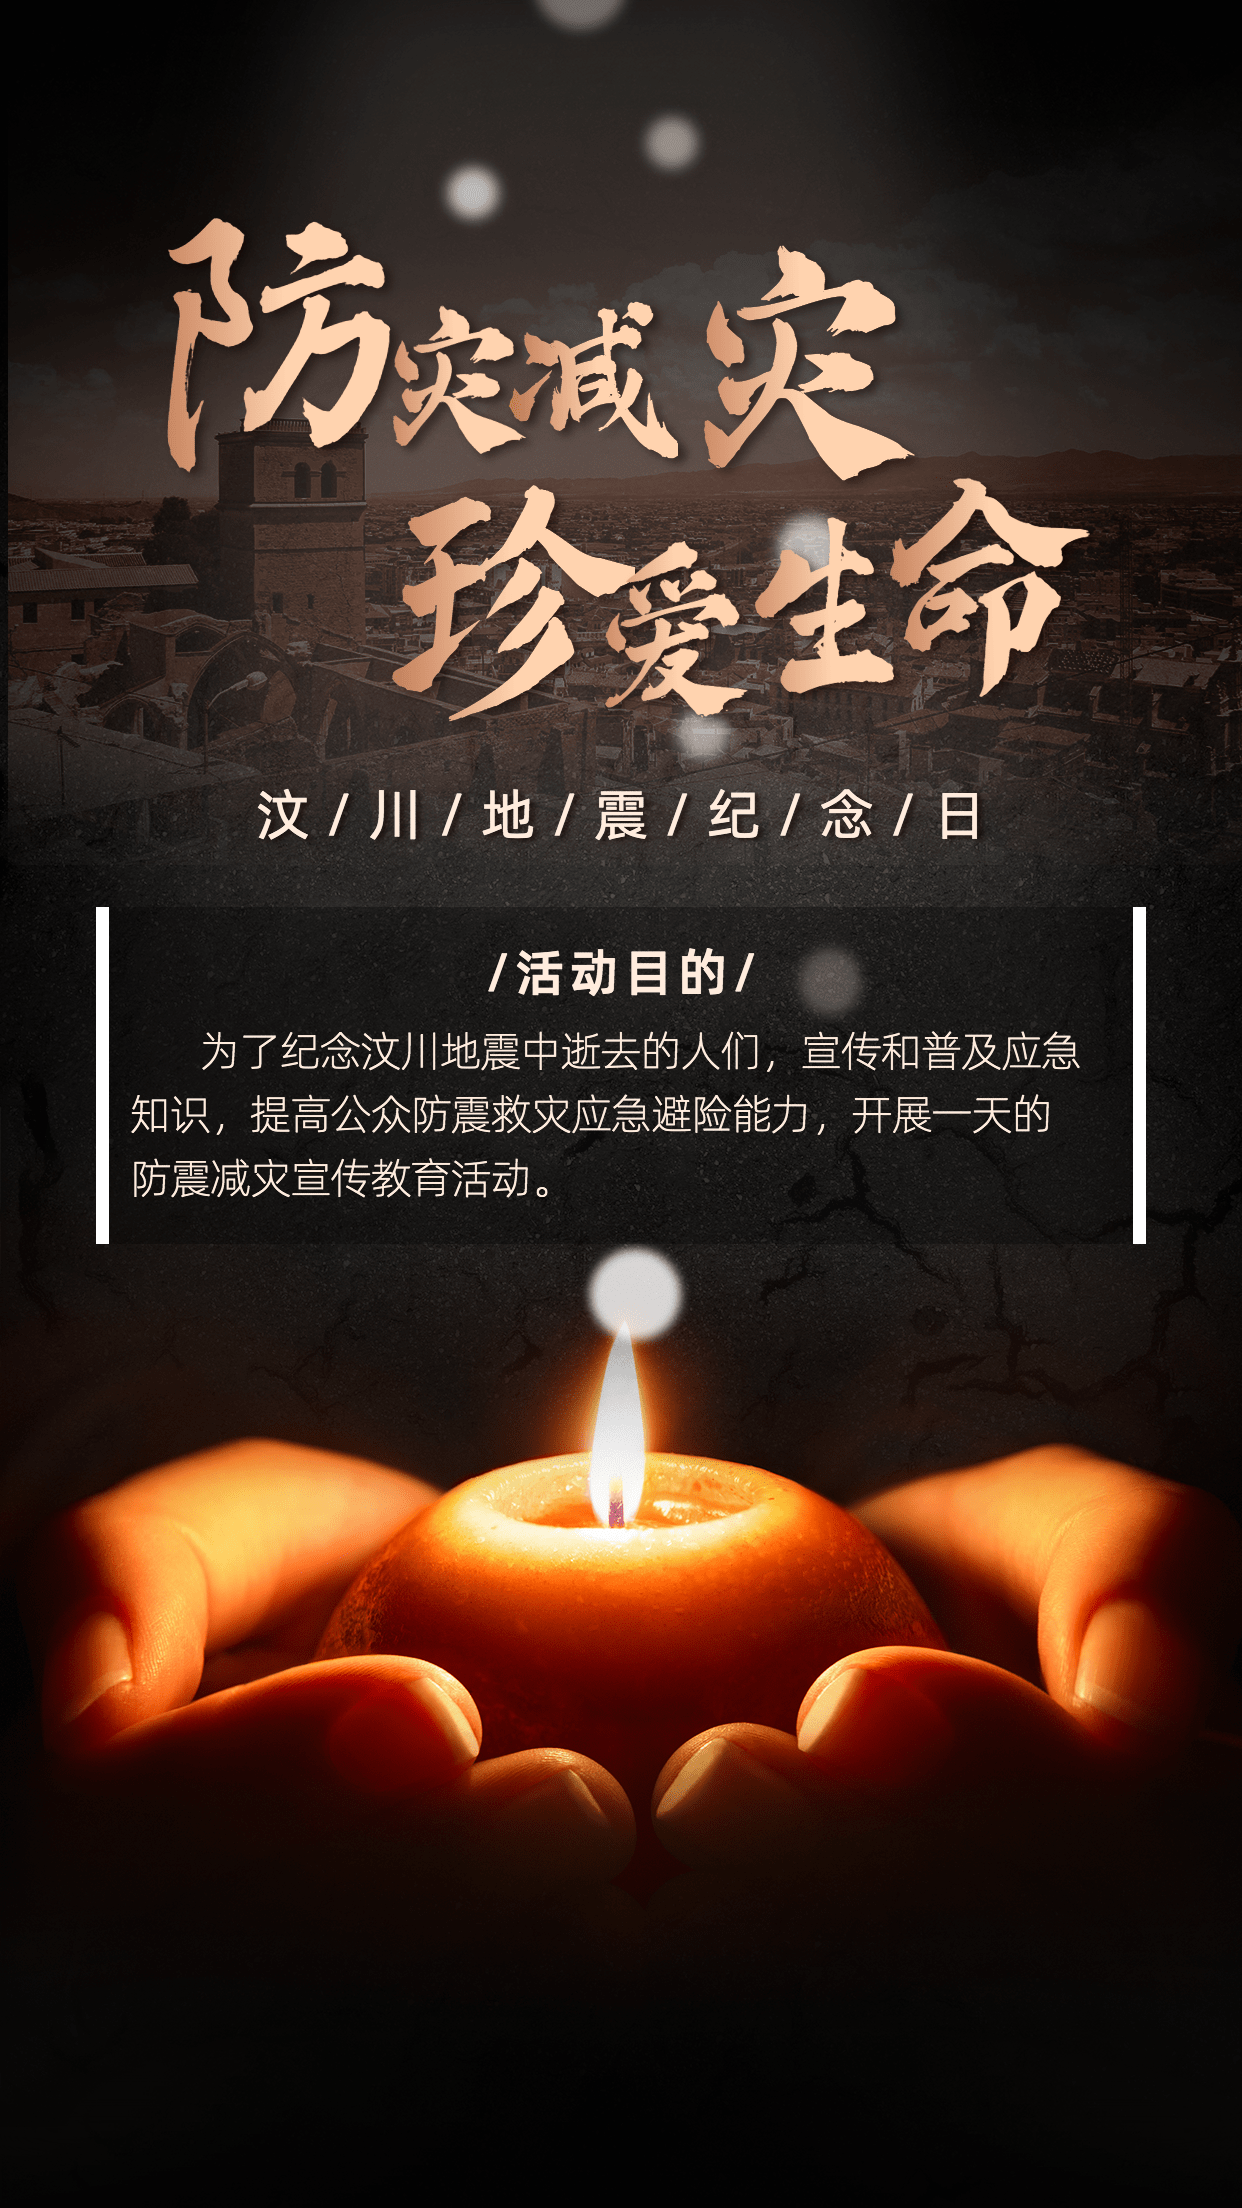 汶川地震纪念日节日宣传排版手机海报